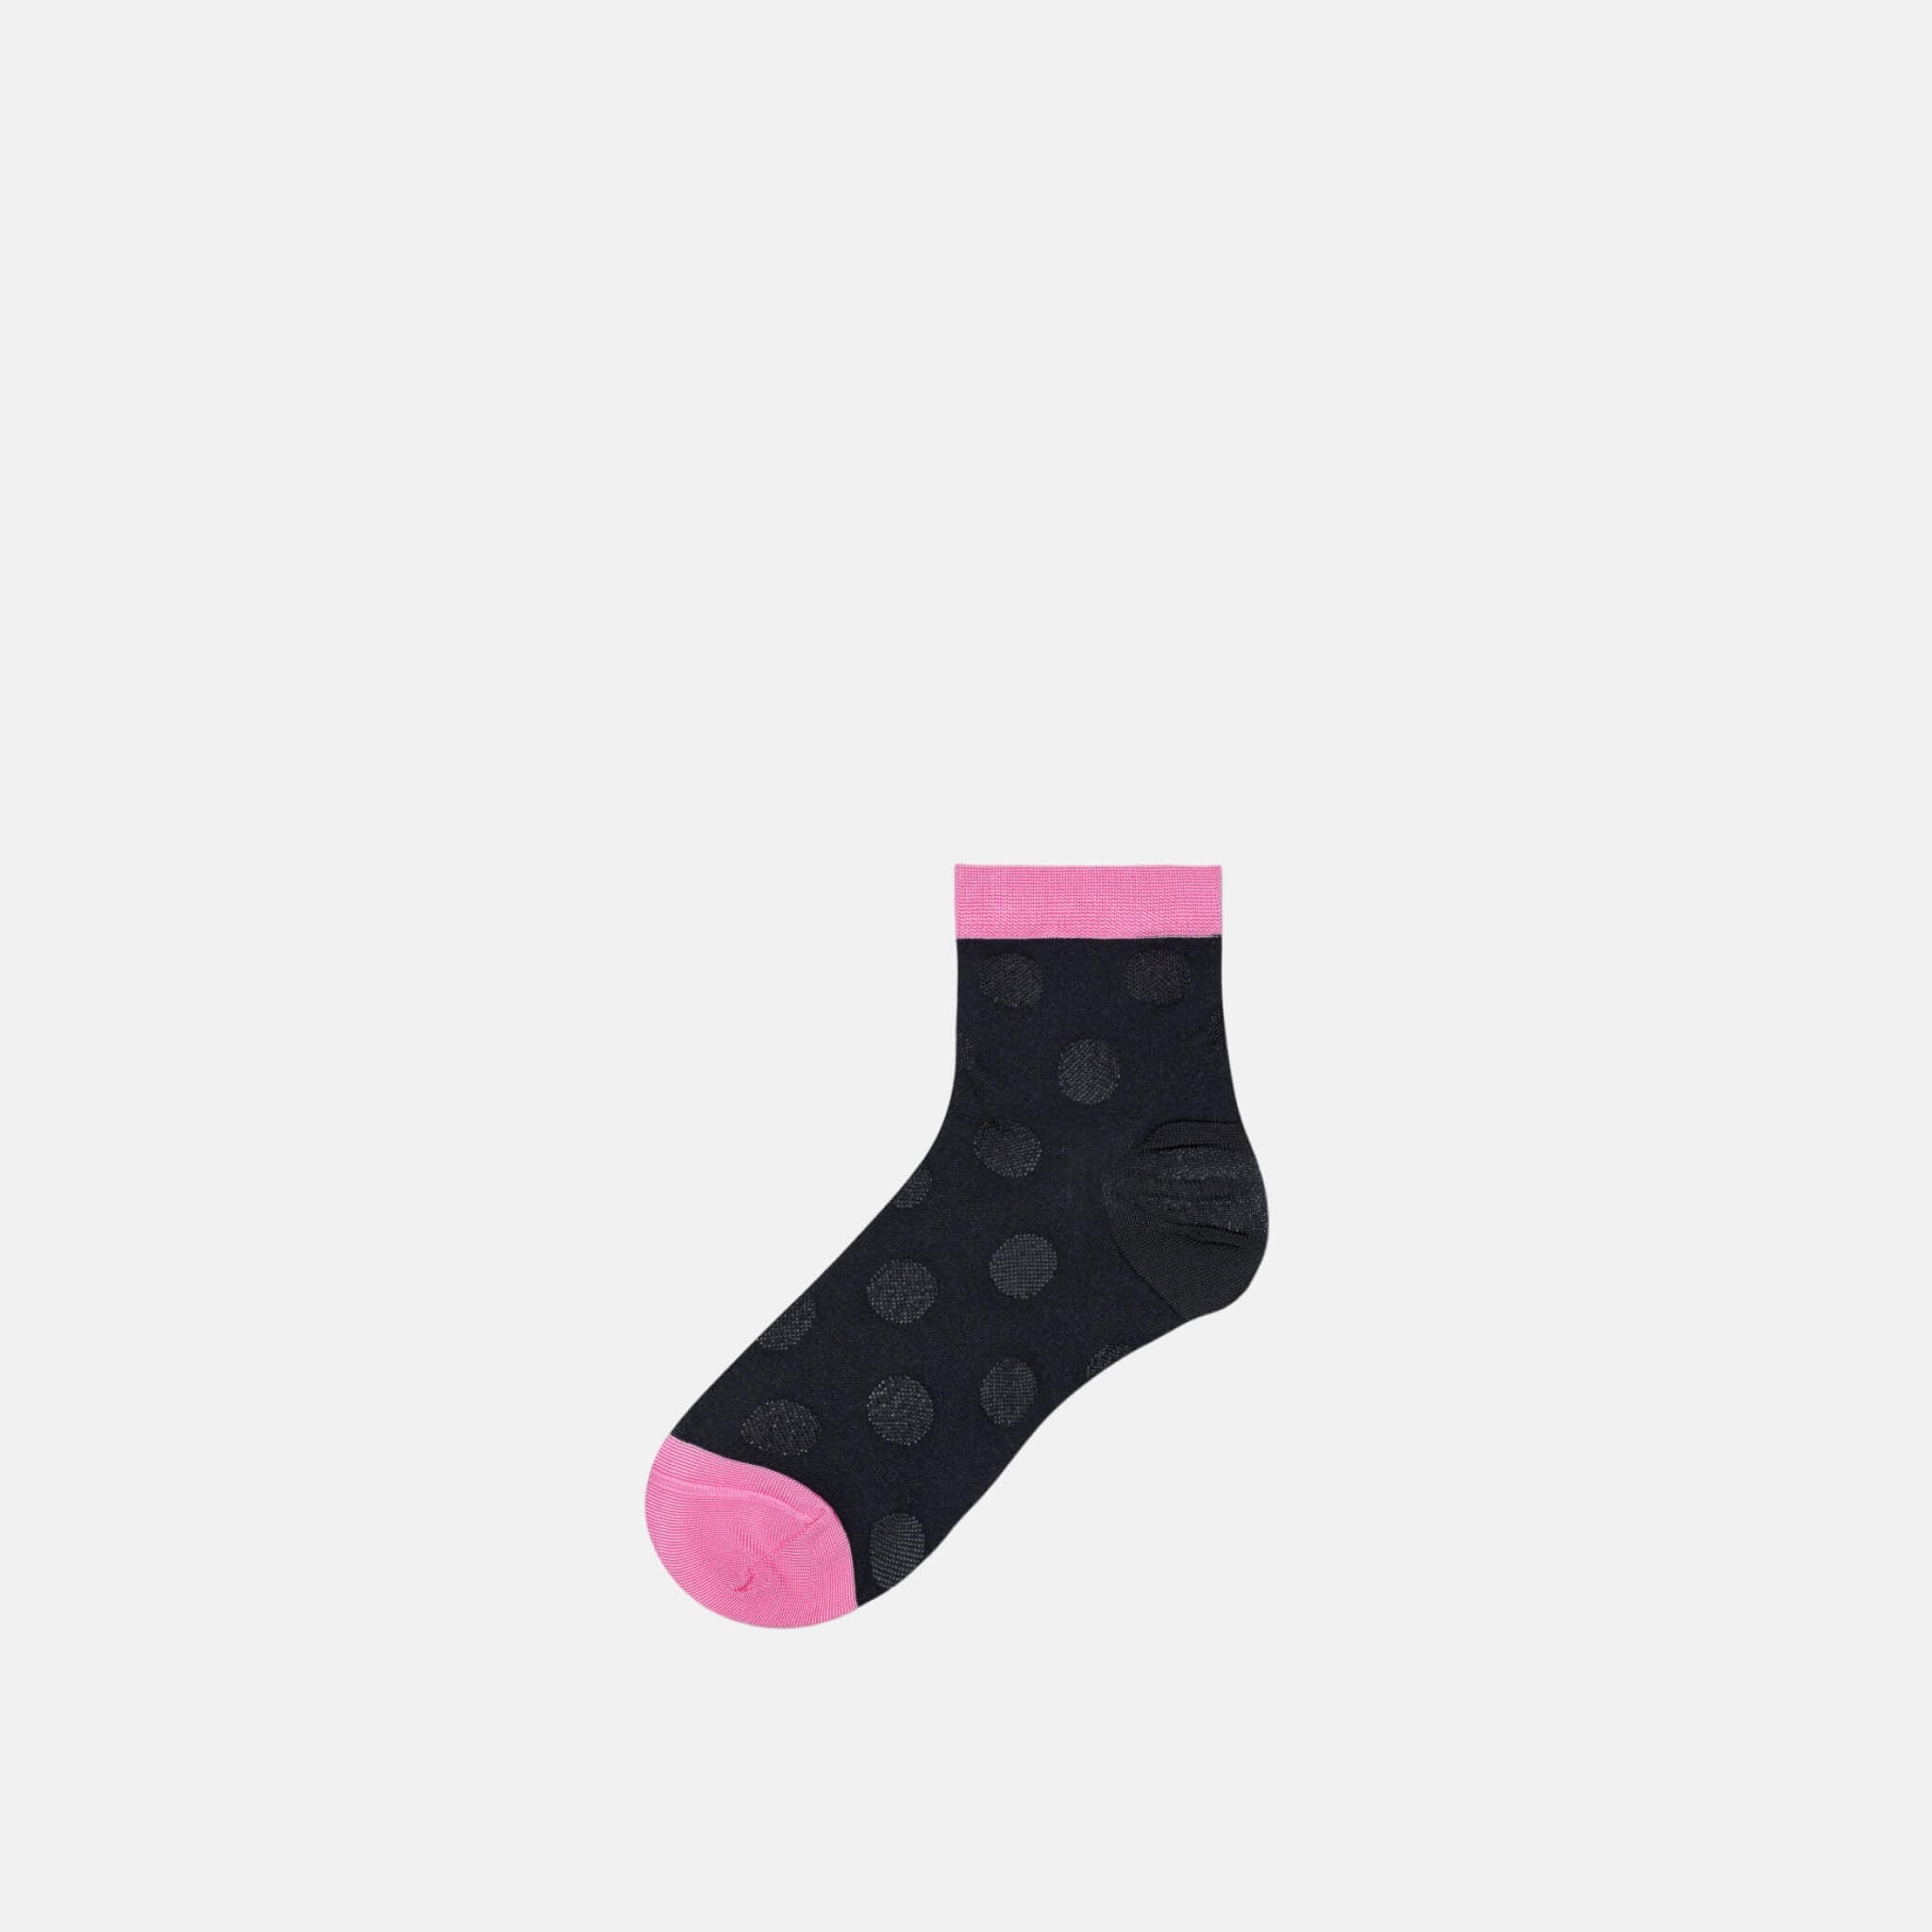 Dámske čierne ponožky Happy Socks Viktoria // kolekcia Hysteria